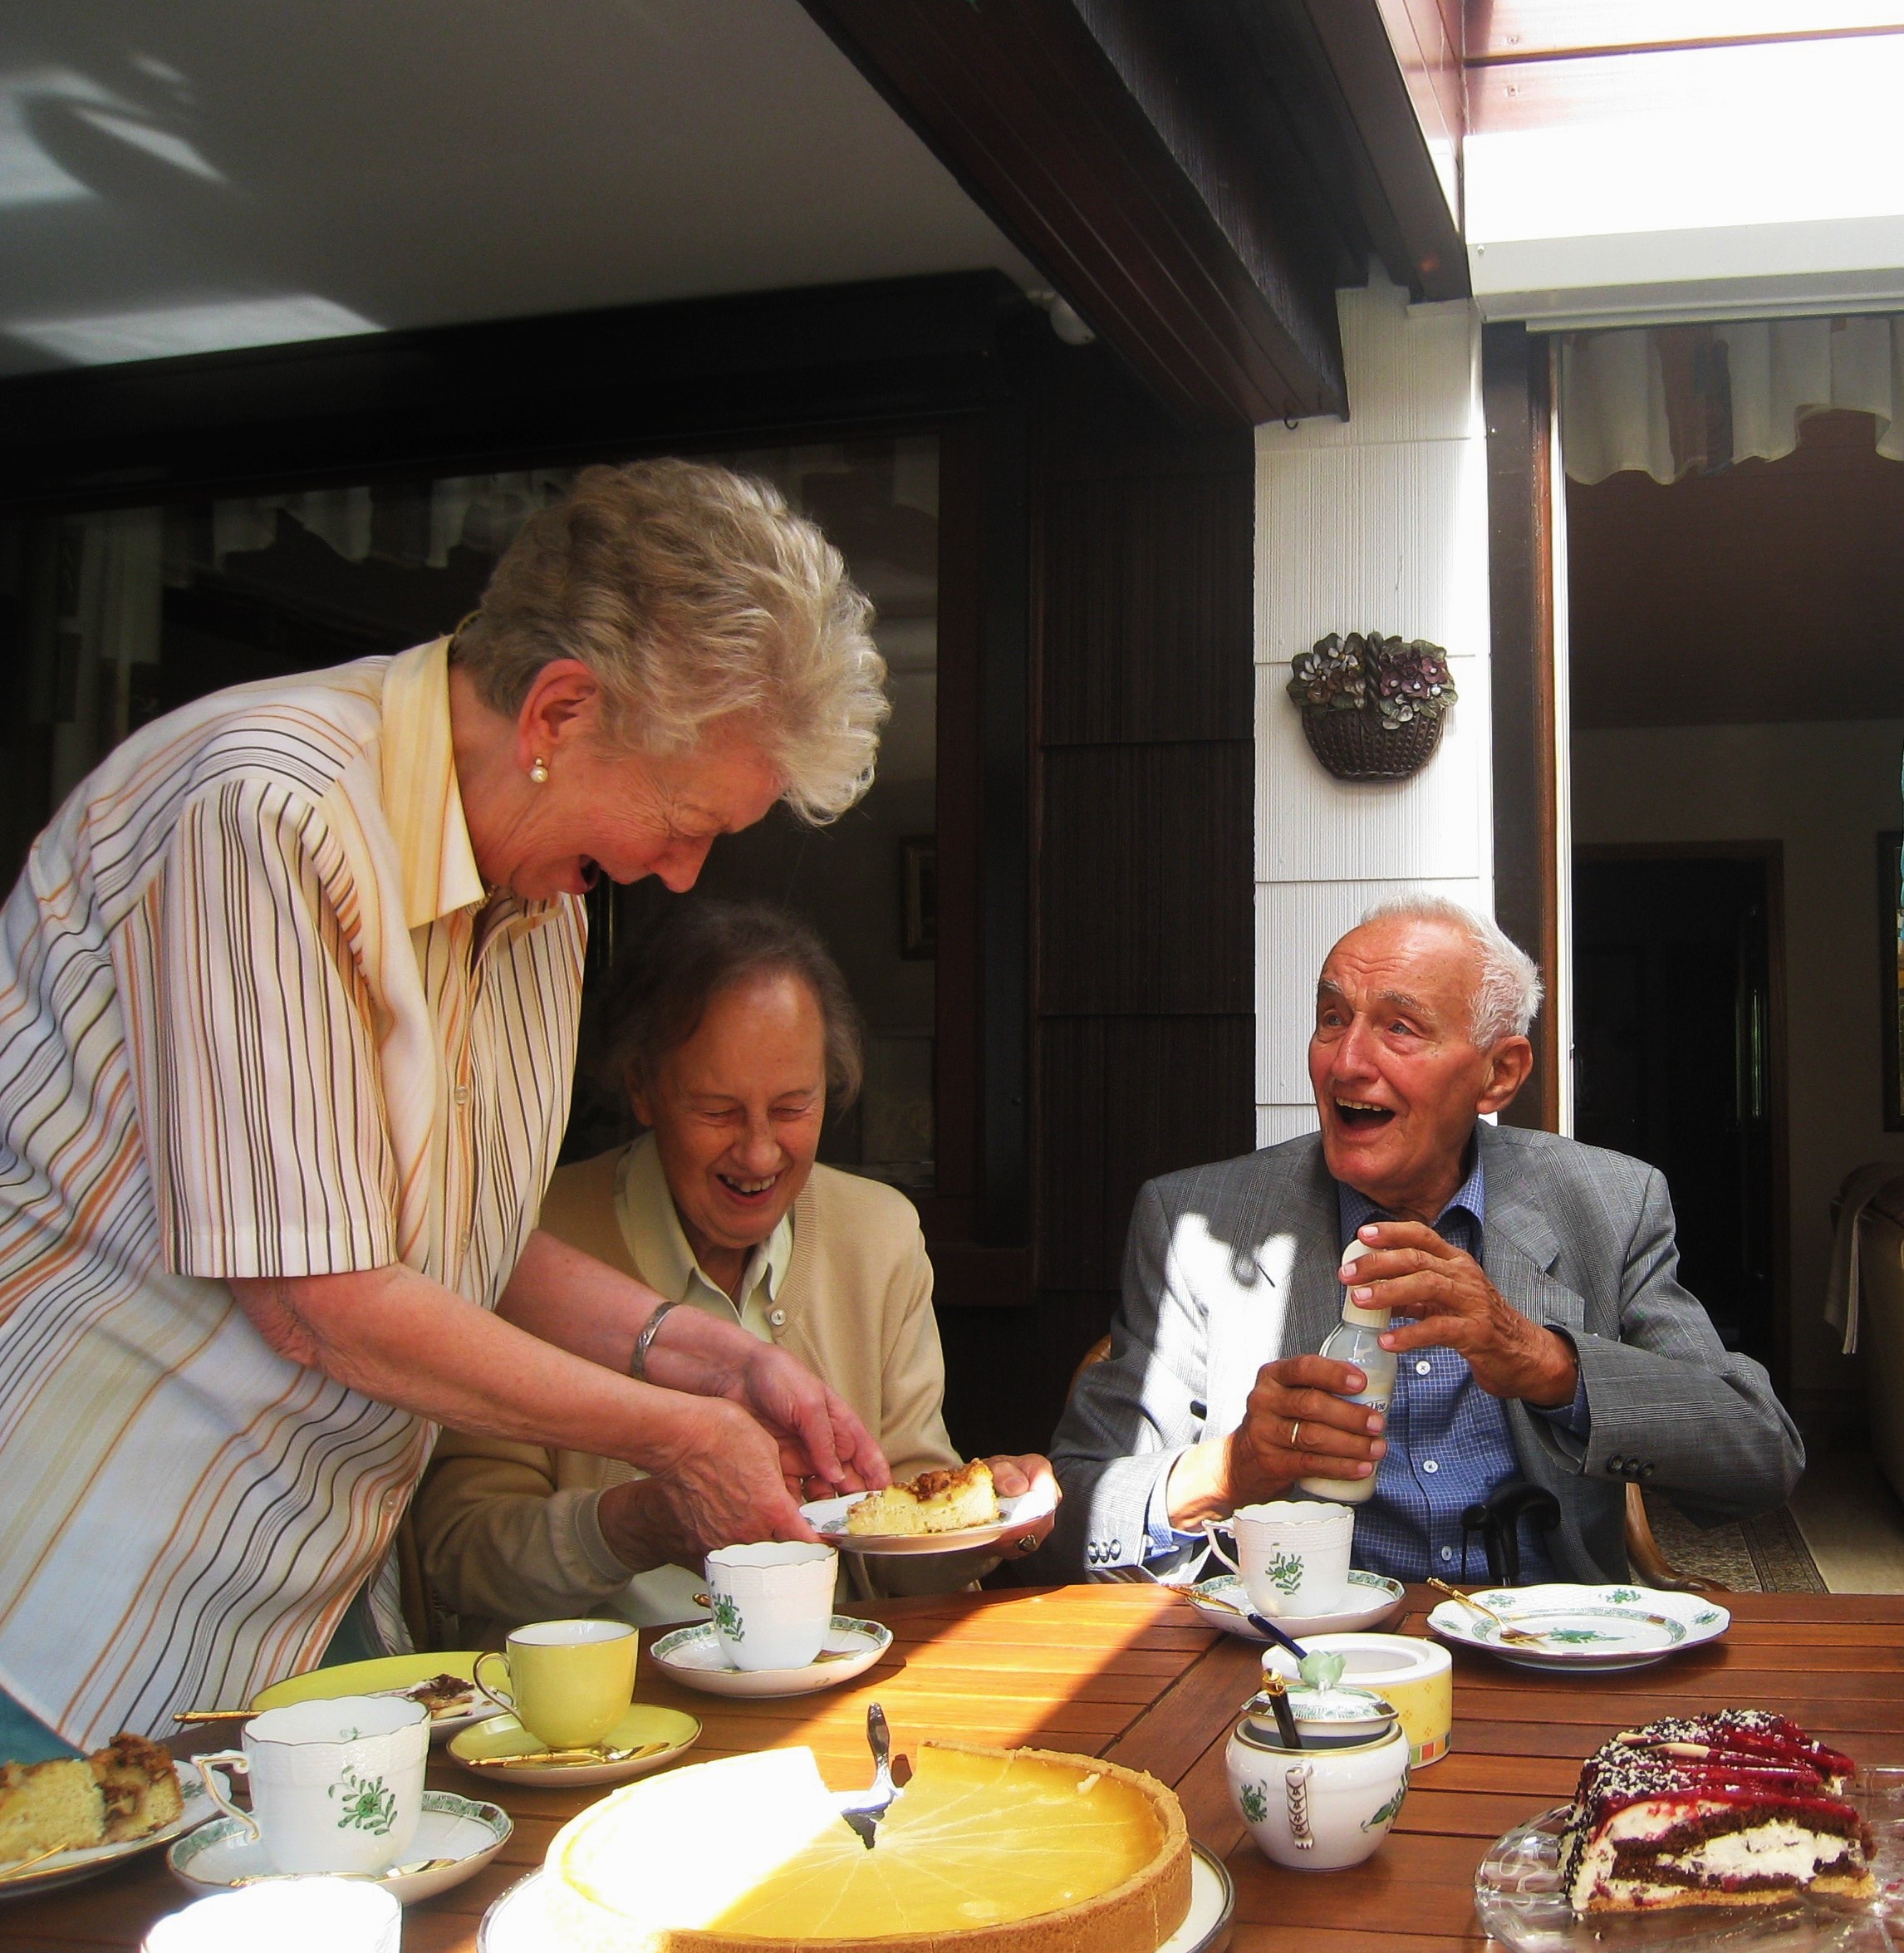 Das Bild zeigt eine Seniorin, die zwei Senioren ein Stück Kuchen reicht.